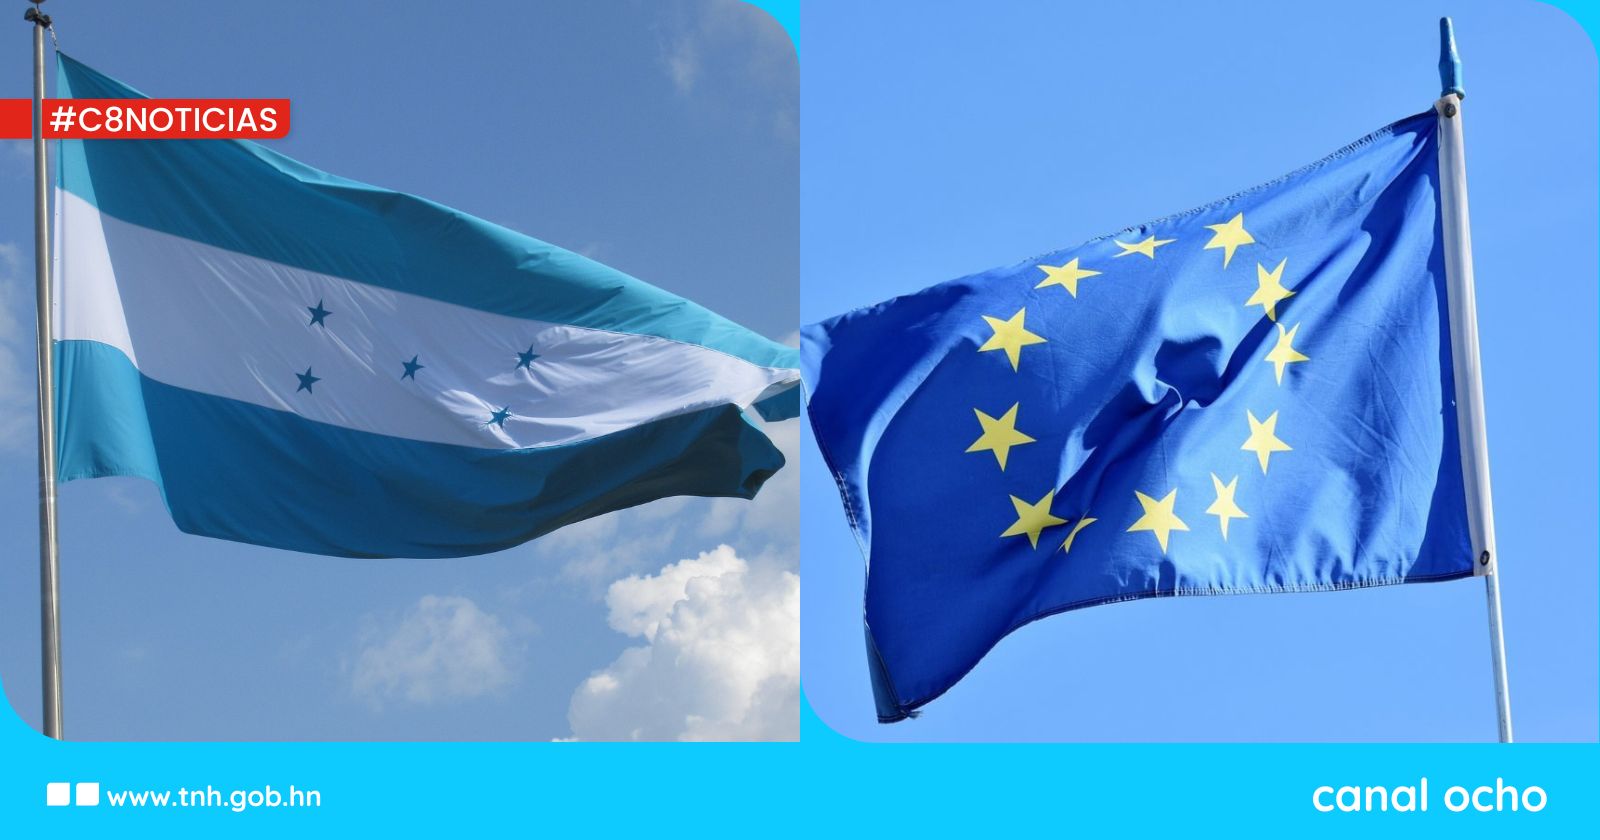 Honduras llega a un acuerdo con la Unión Europea para reforzar relaciones comerciales